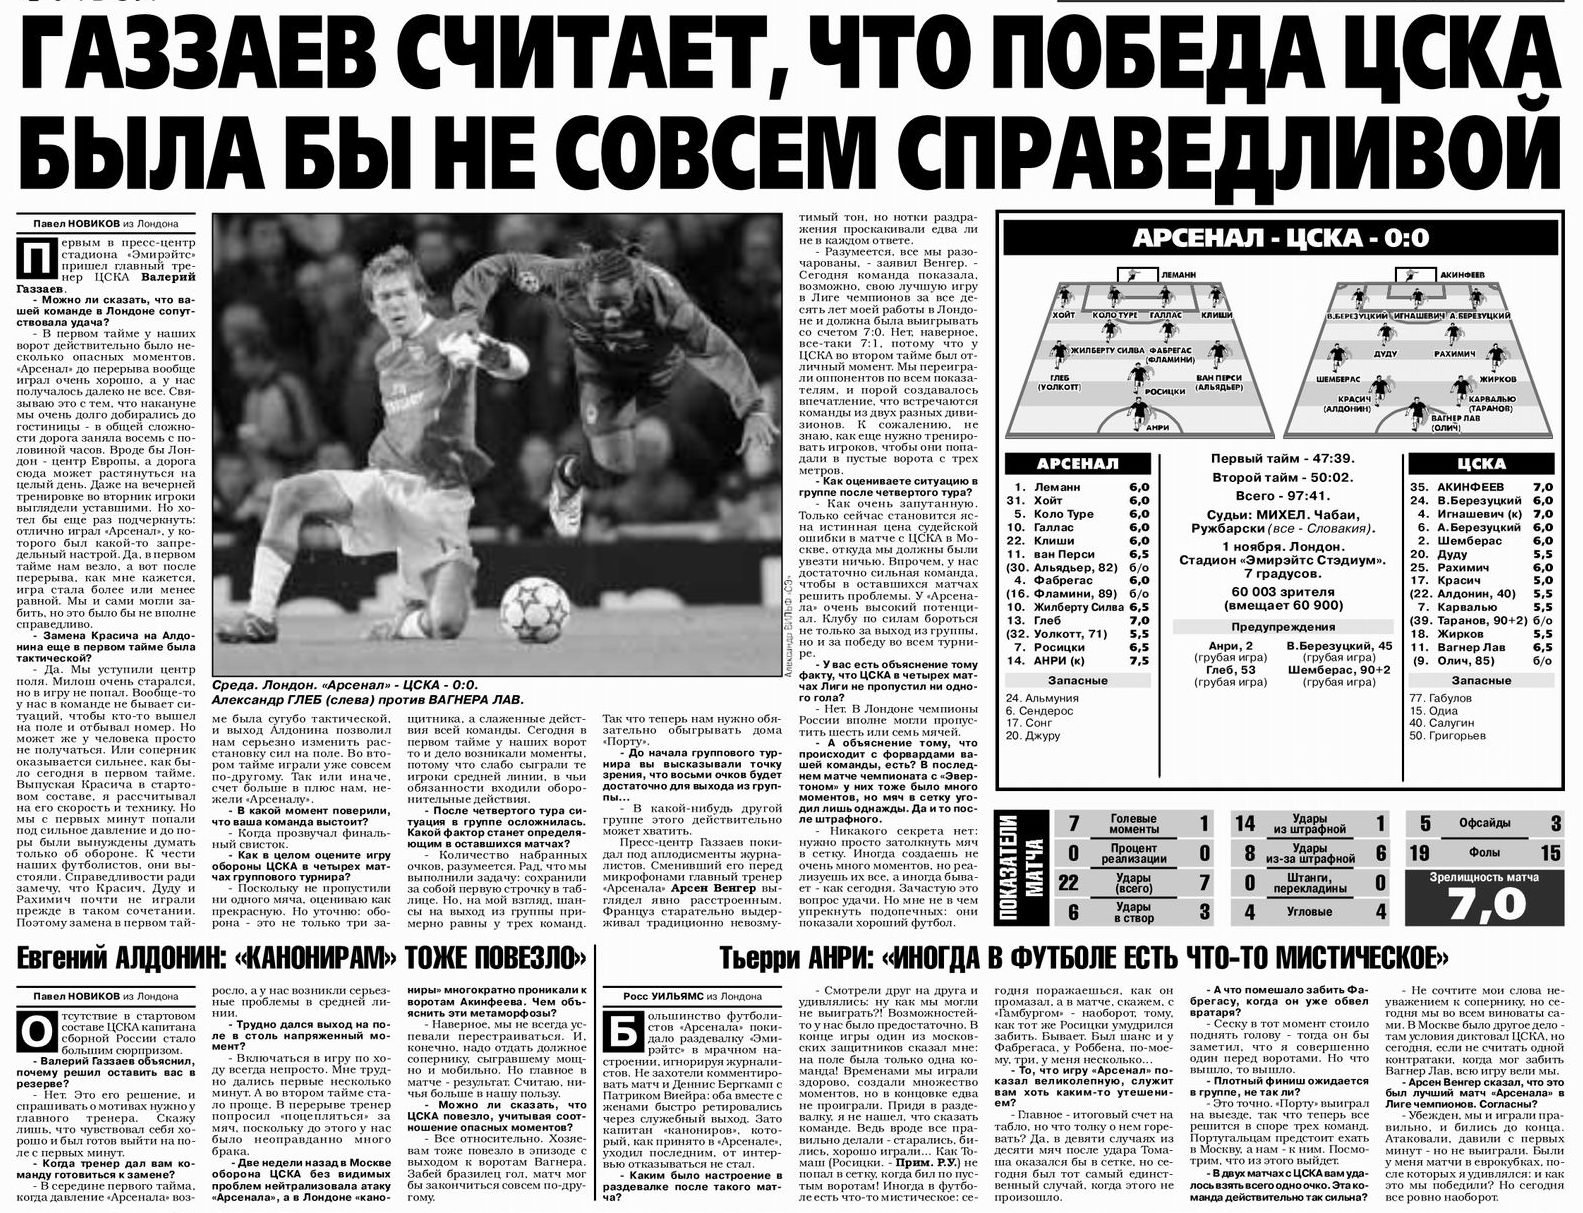 2006-11-01.Arsenal-CSKA.3